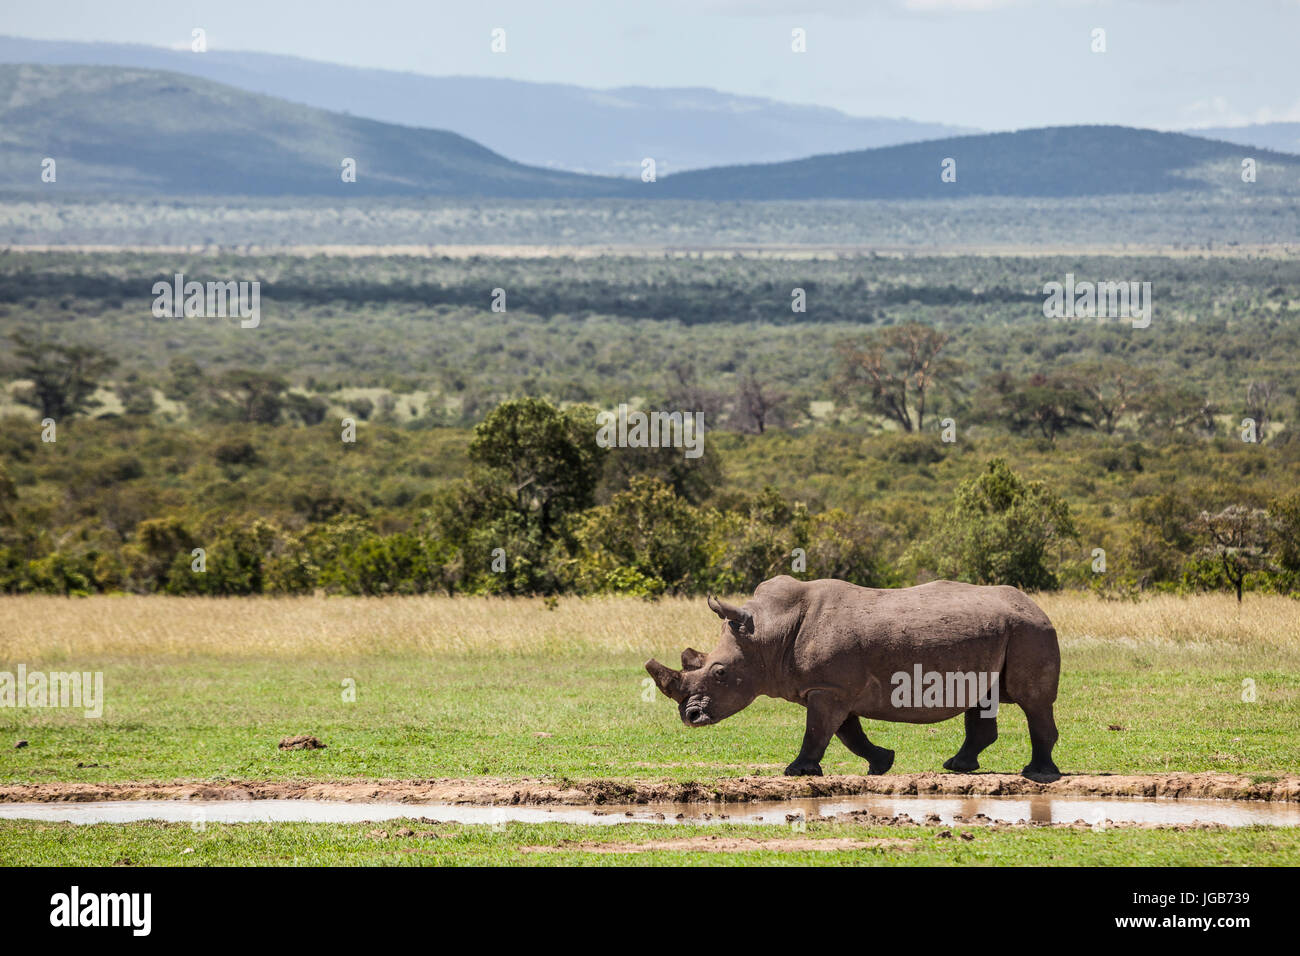 White rhino, Solio game ranch, Kenya. Stock Photo